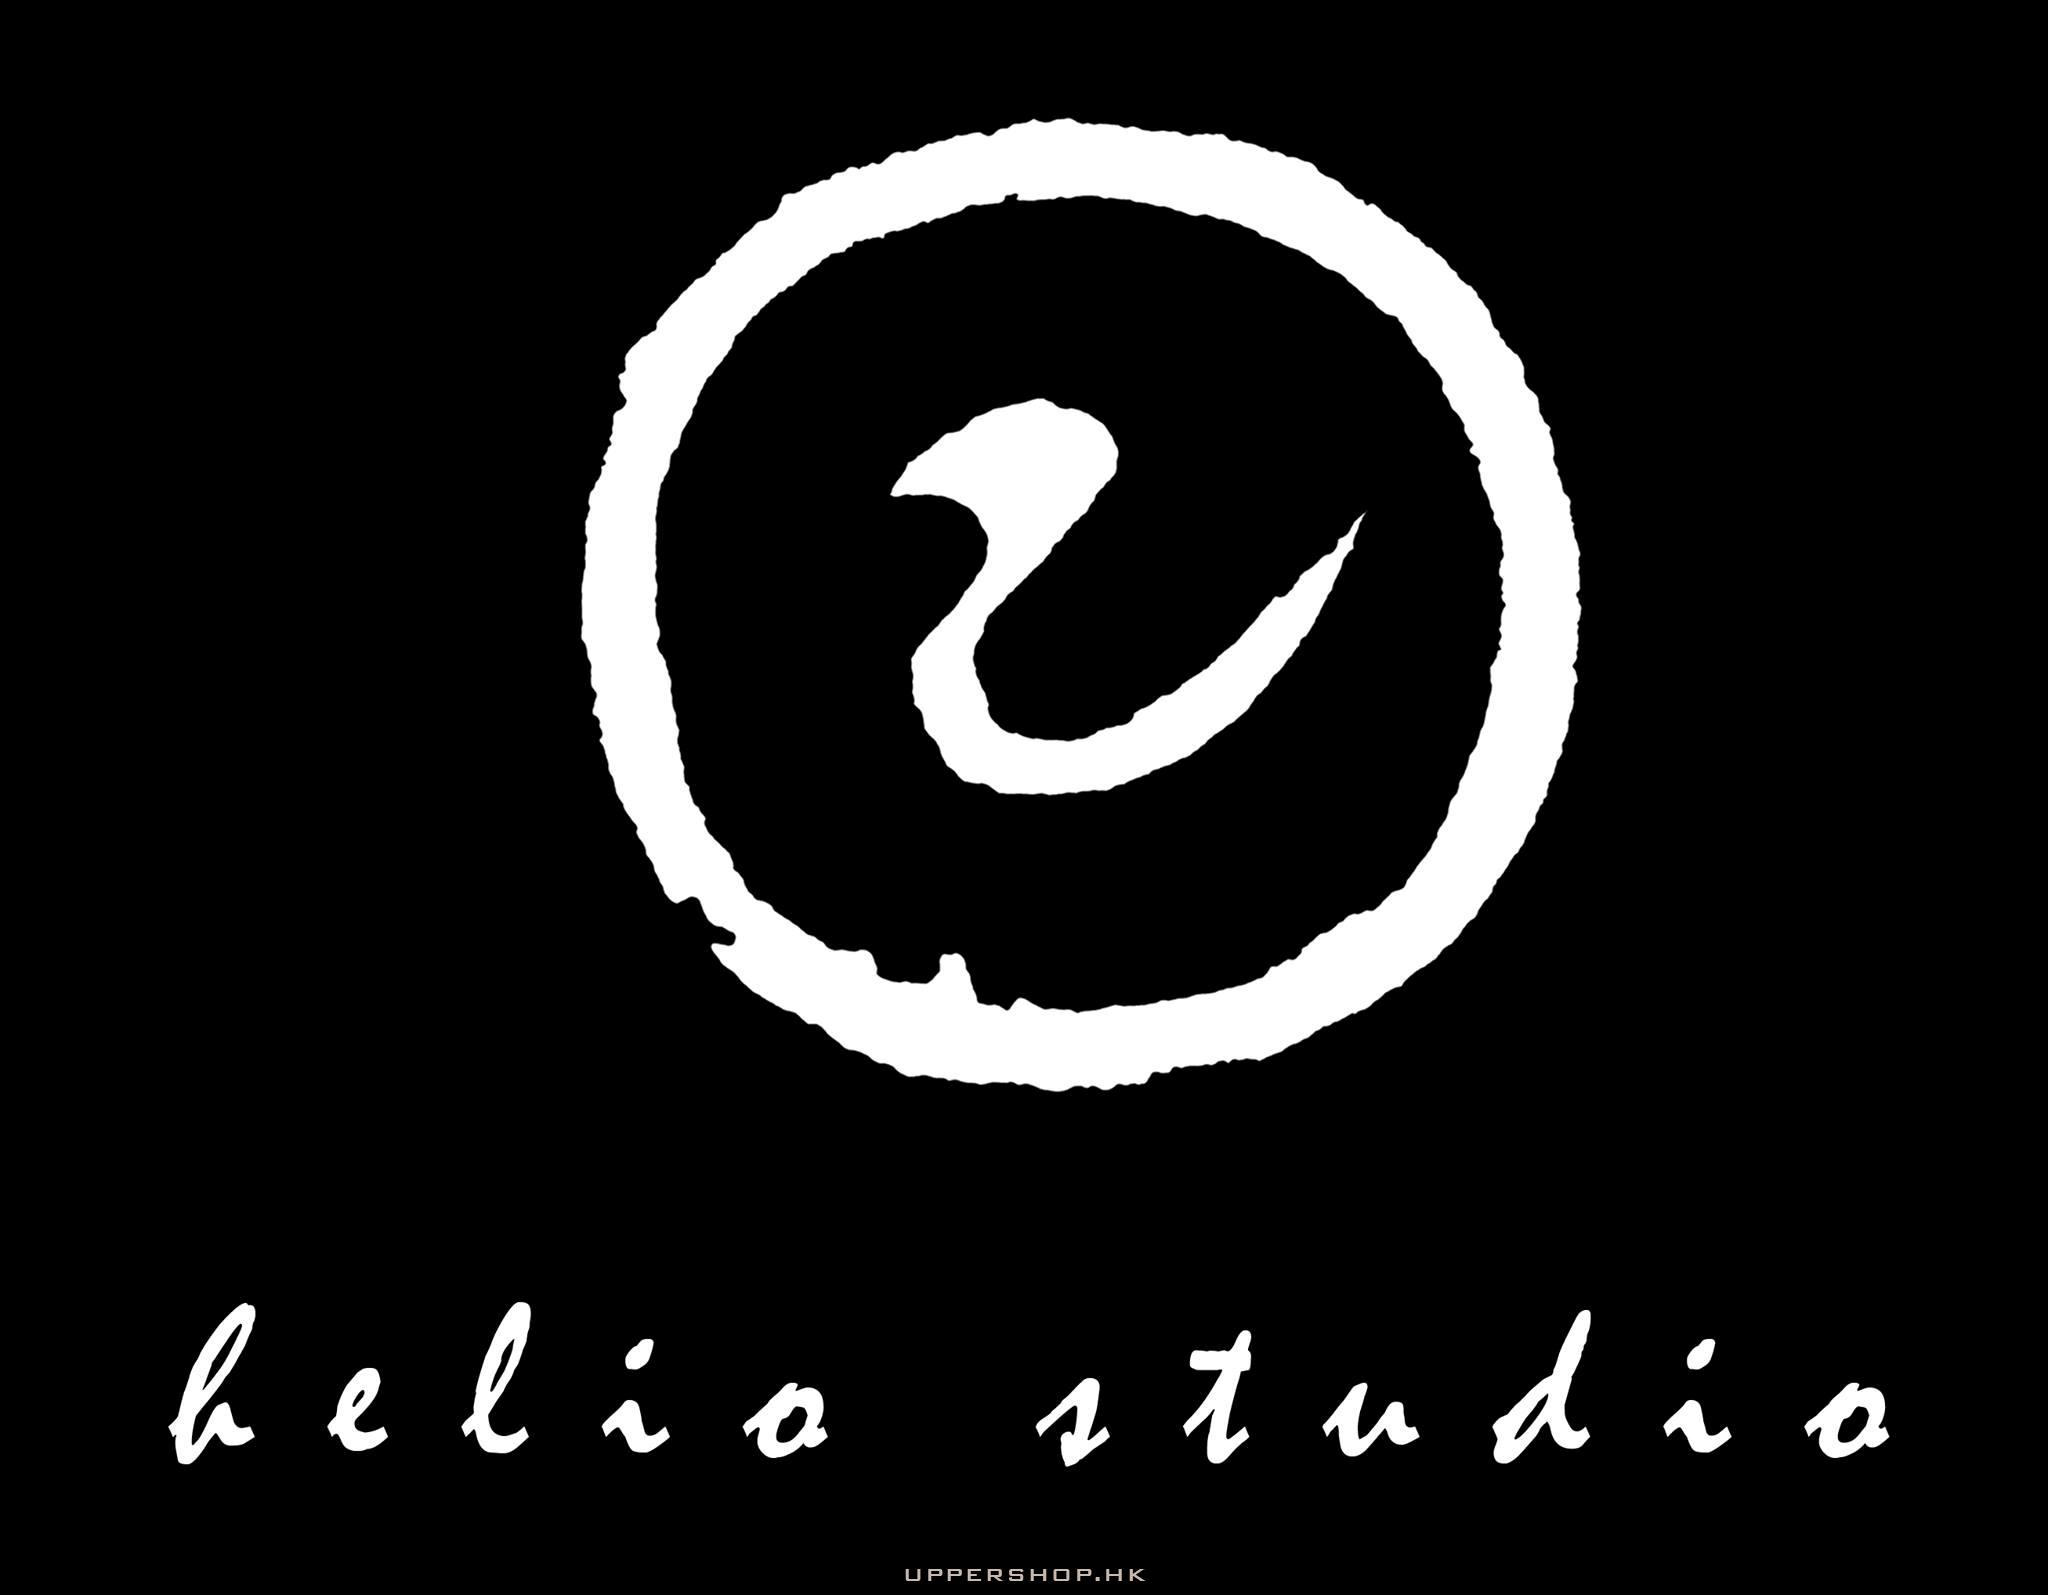 Helio studio 日影室